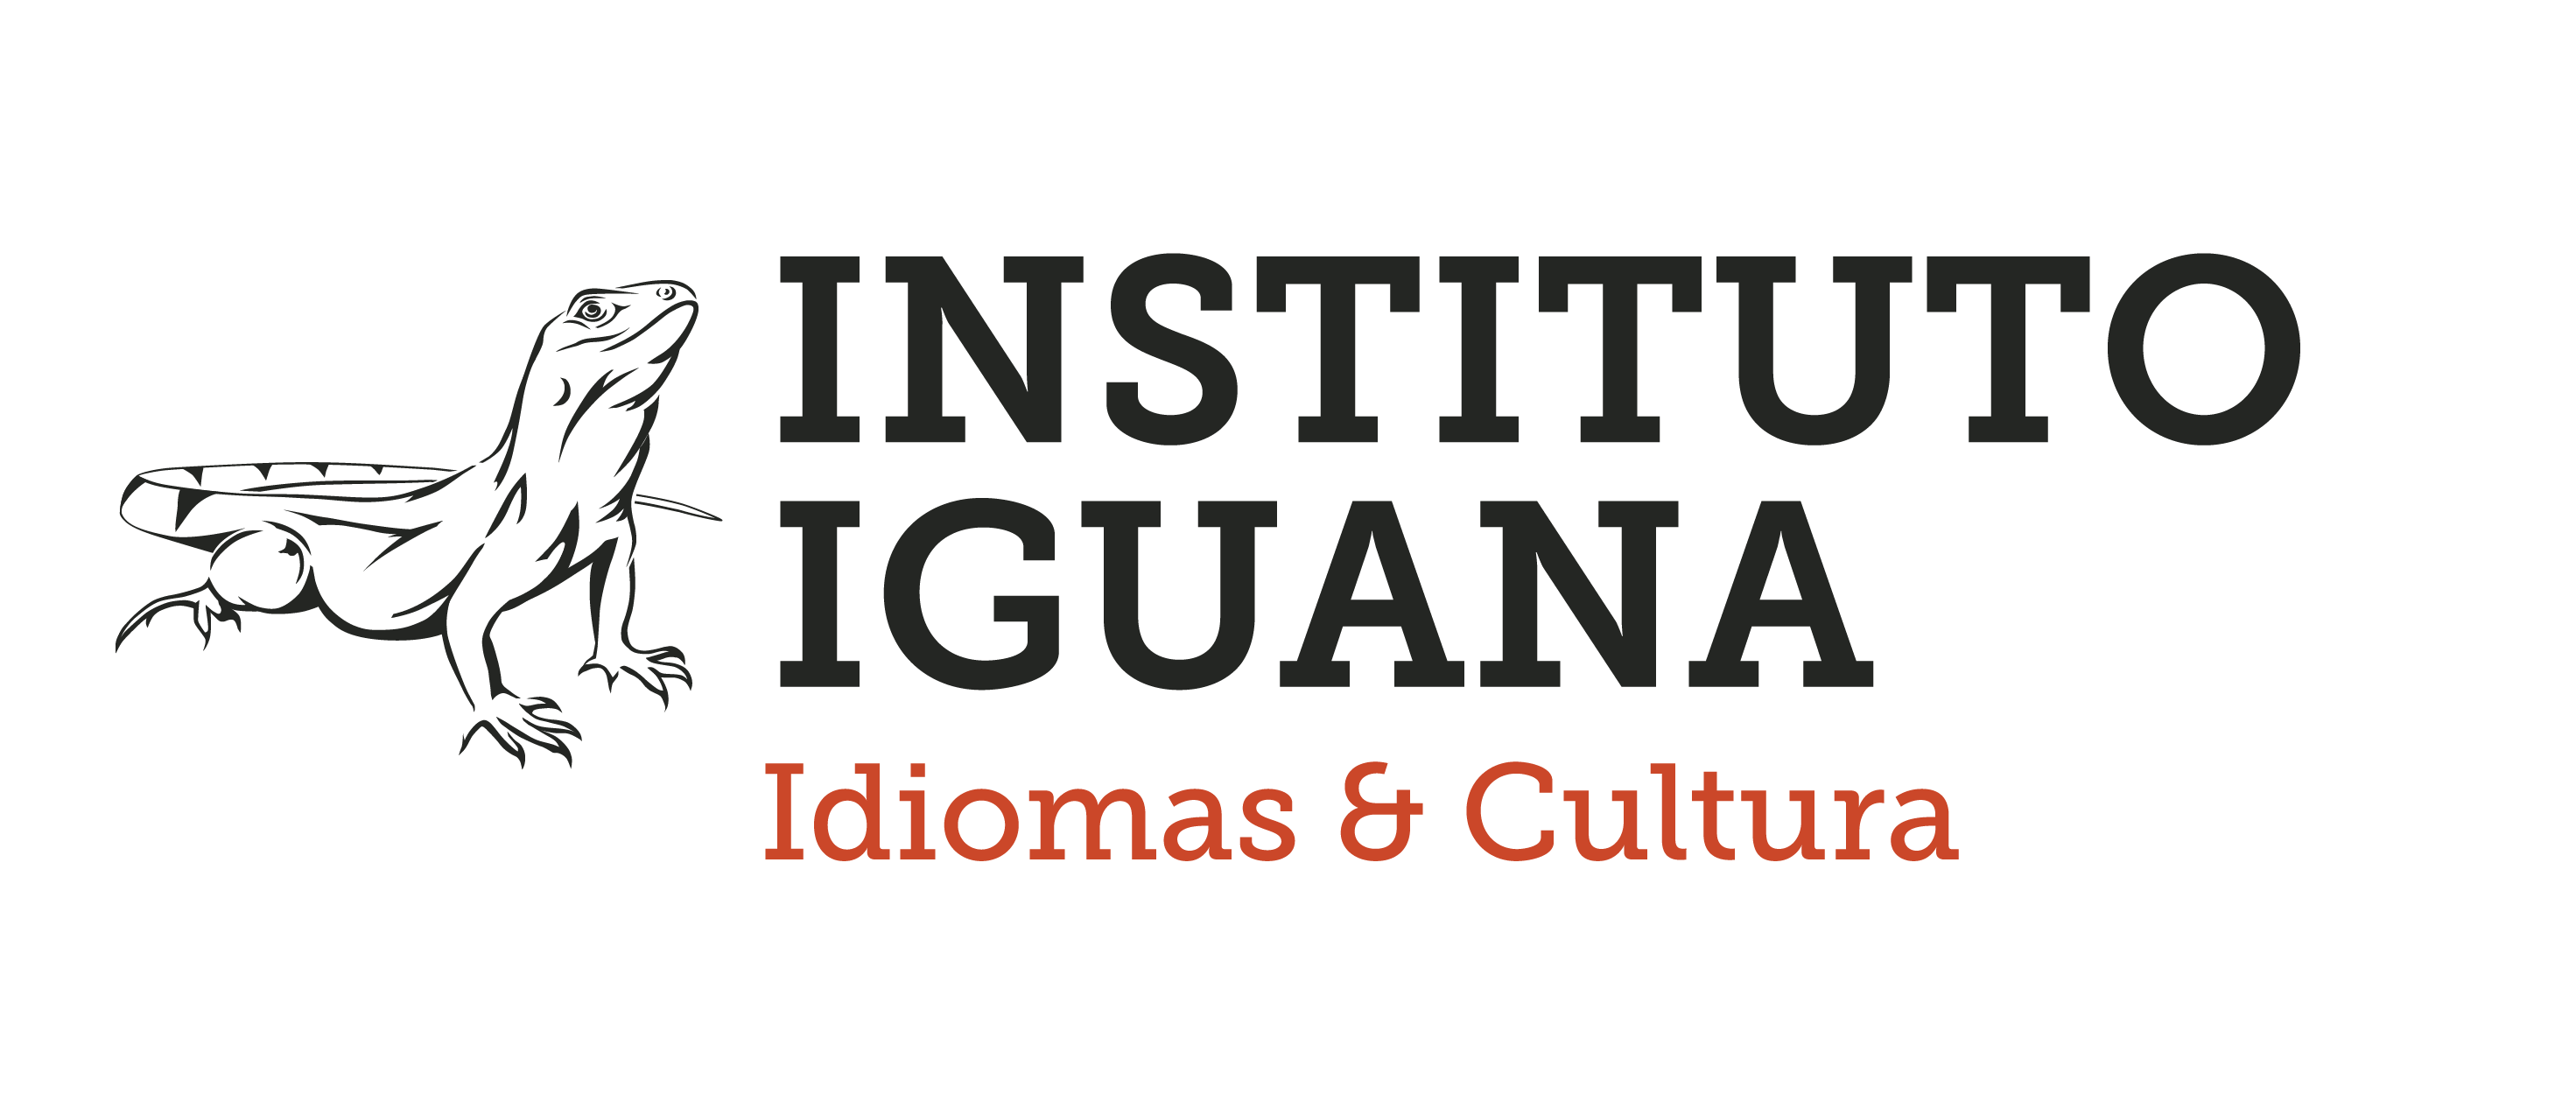 Instituto Iguana